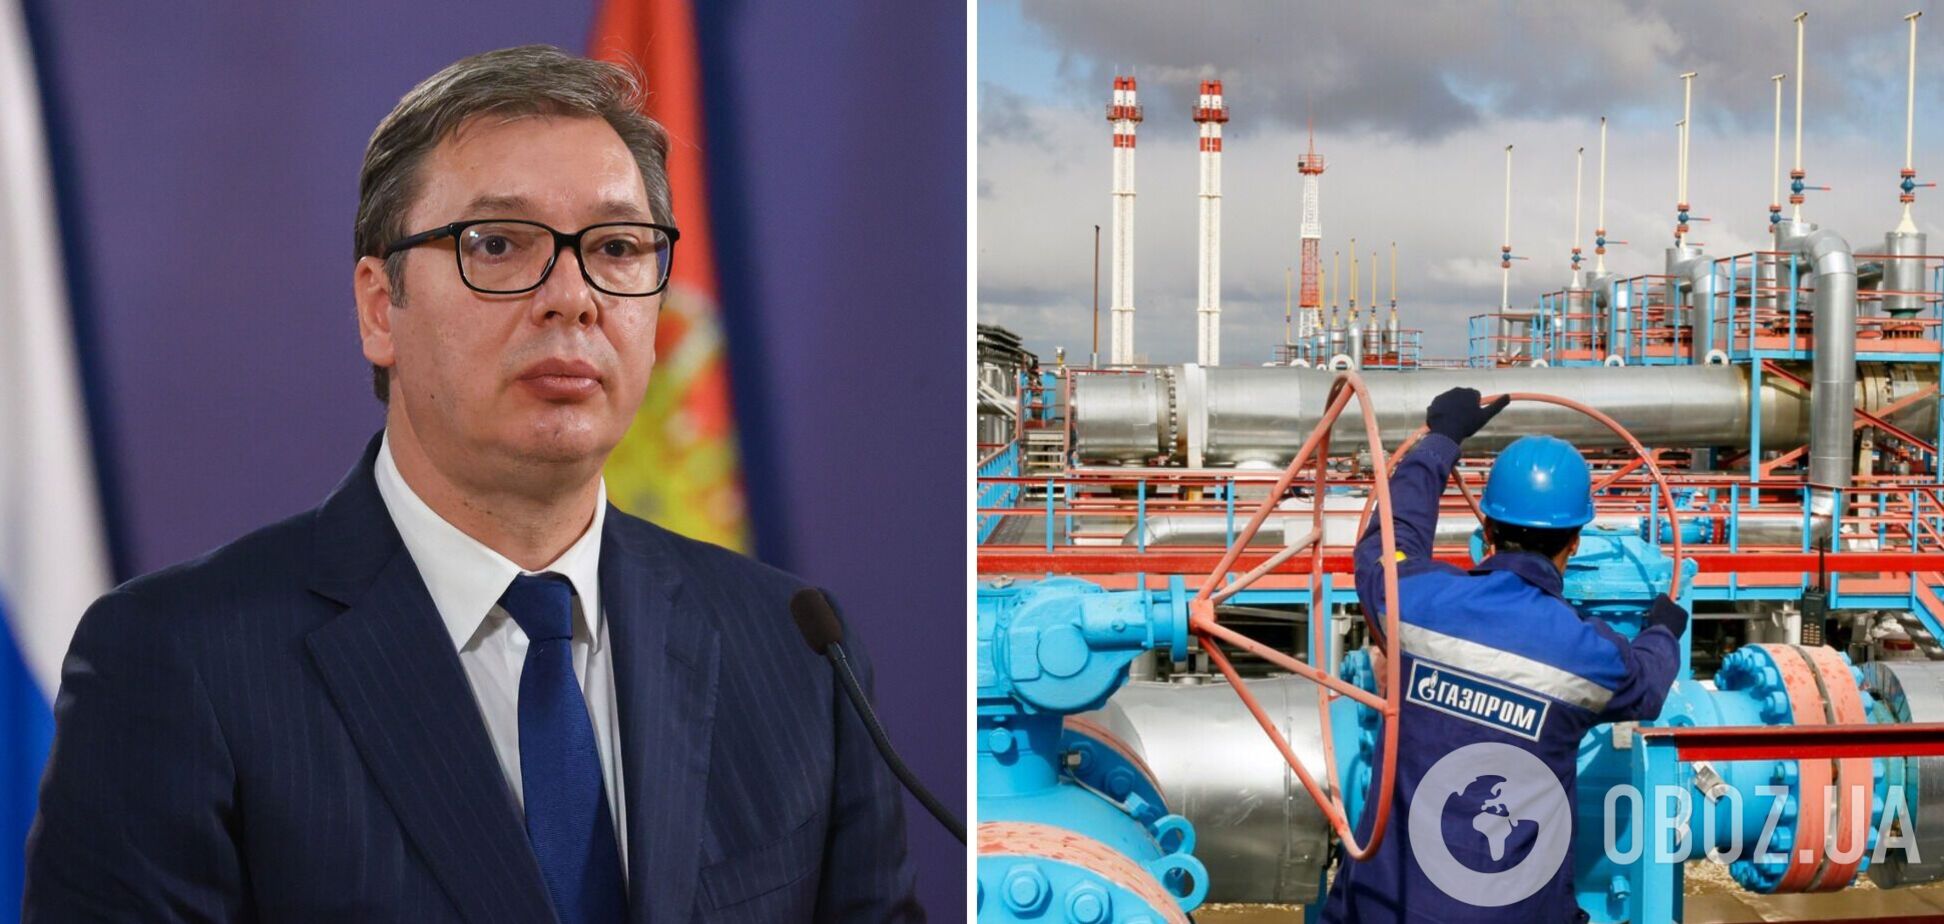 Вучич неожиданно заявил, что Сербия может обойтись без российских энергоносителей